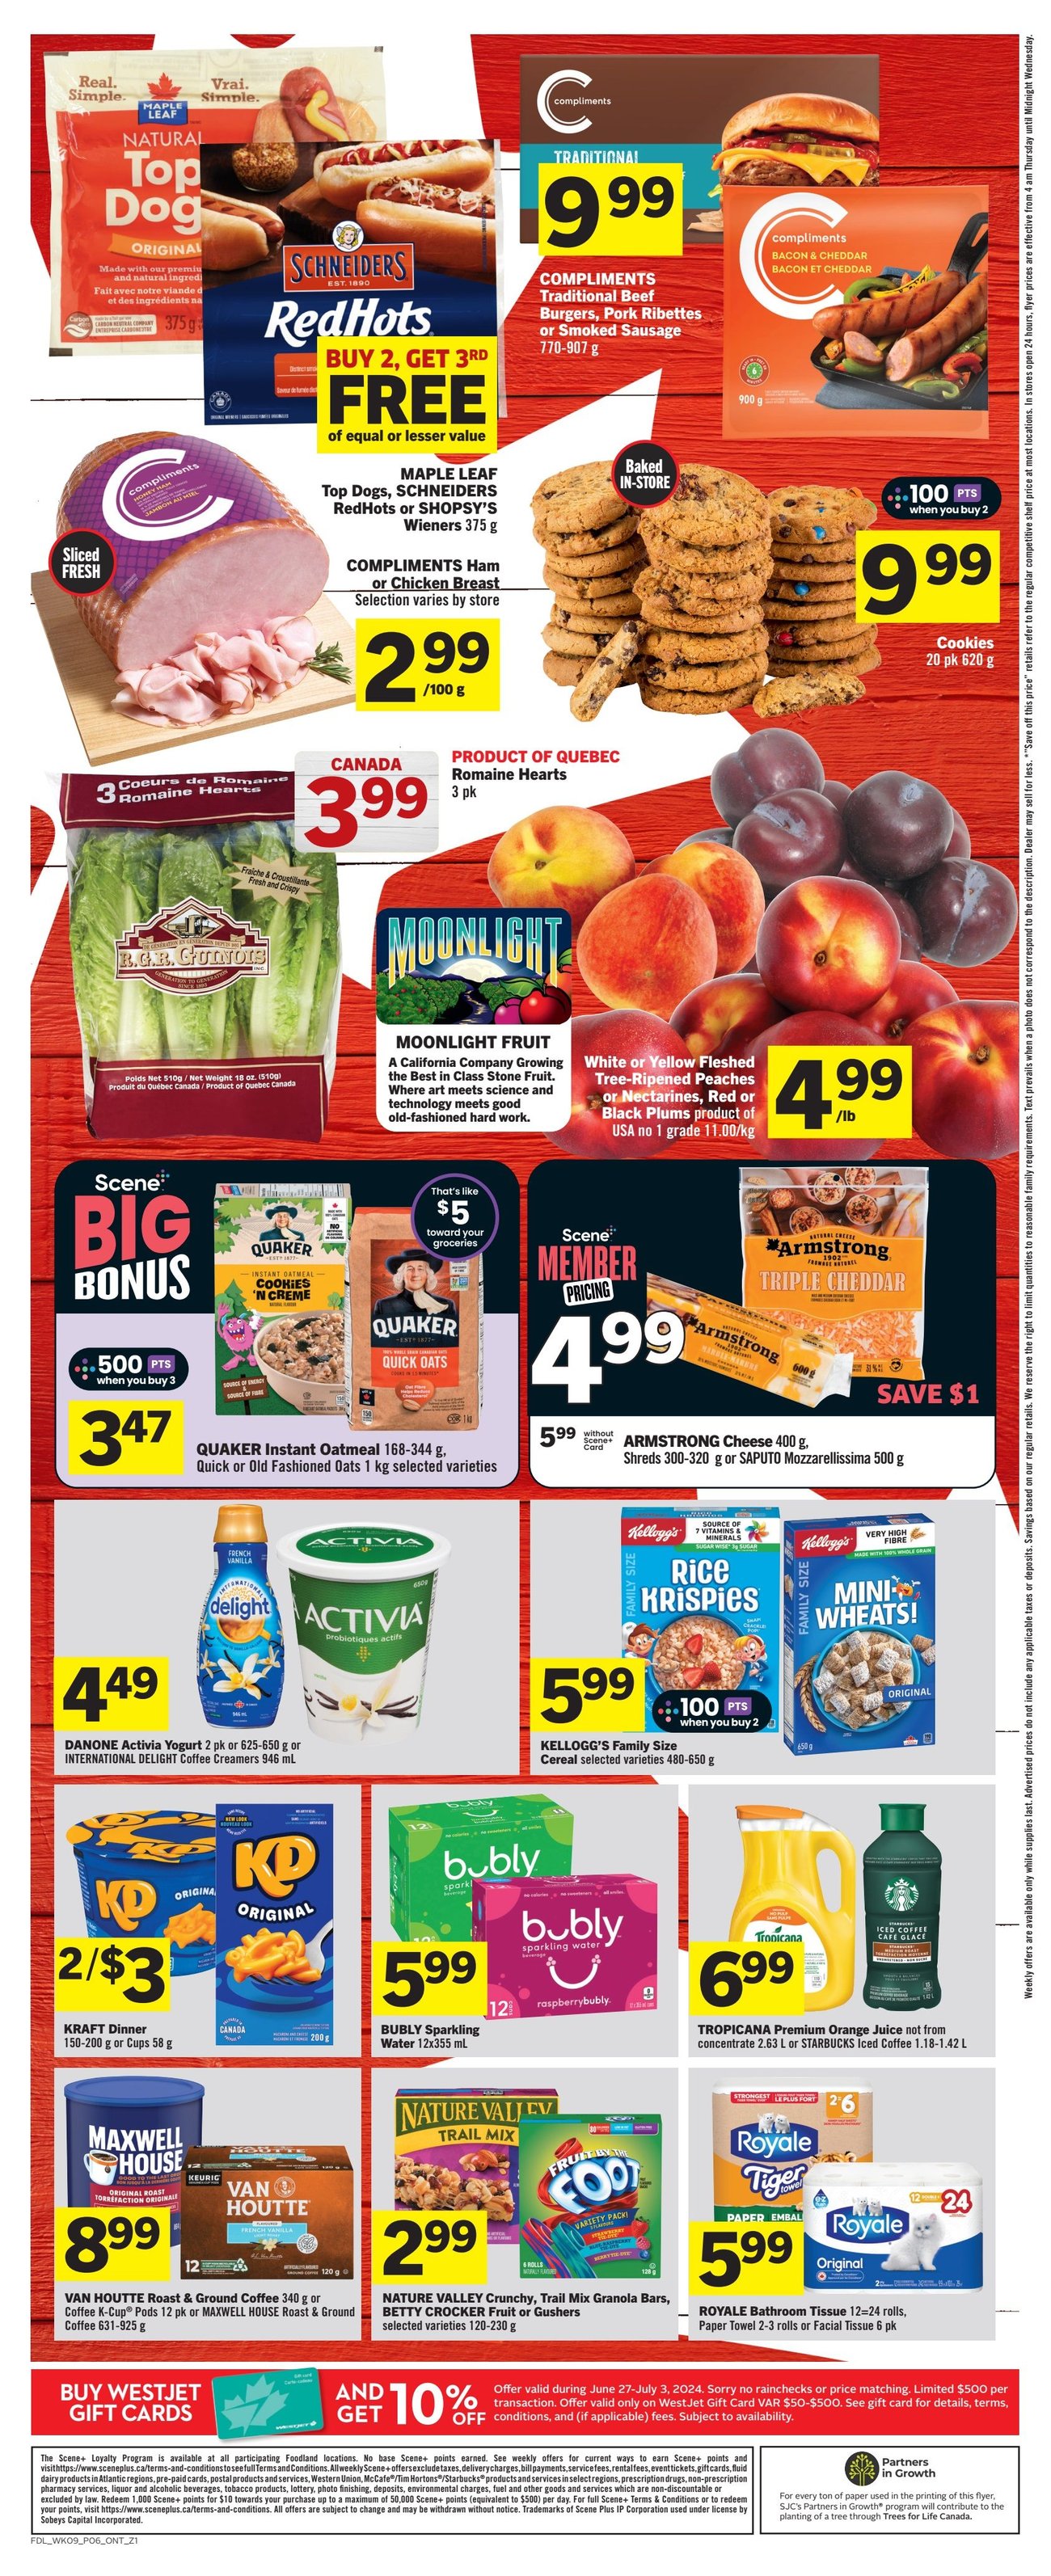 Foodland - Ontario - Weekly Flyer Specials - Page 2